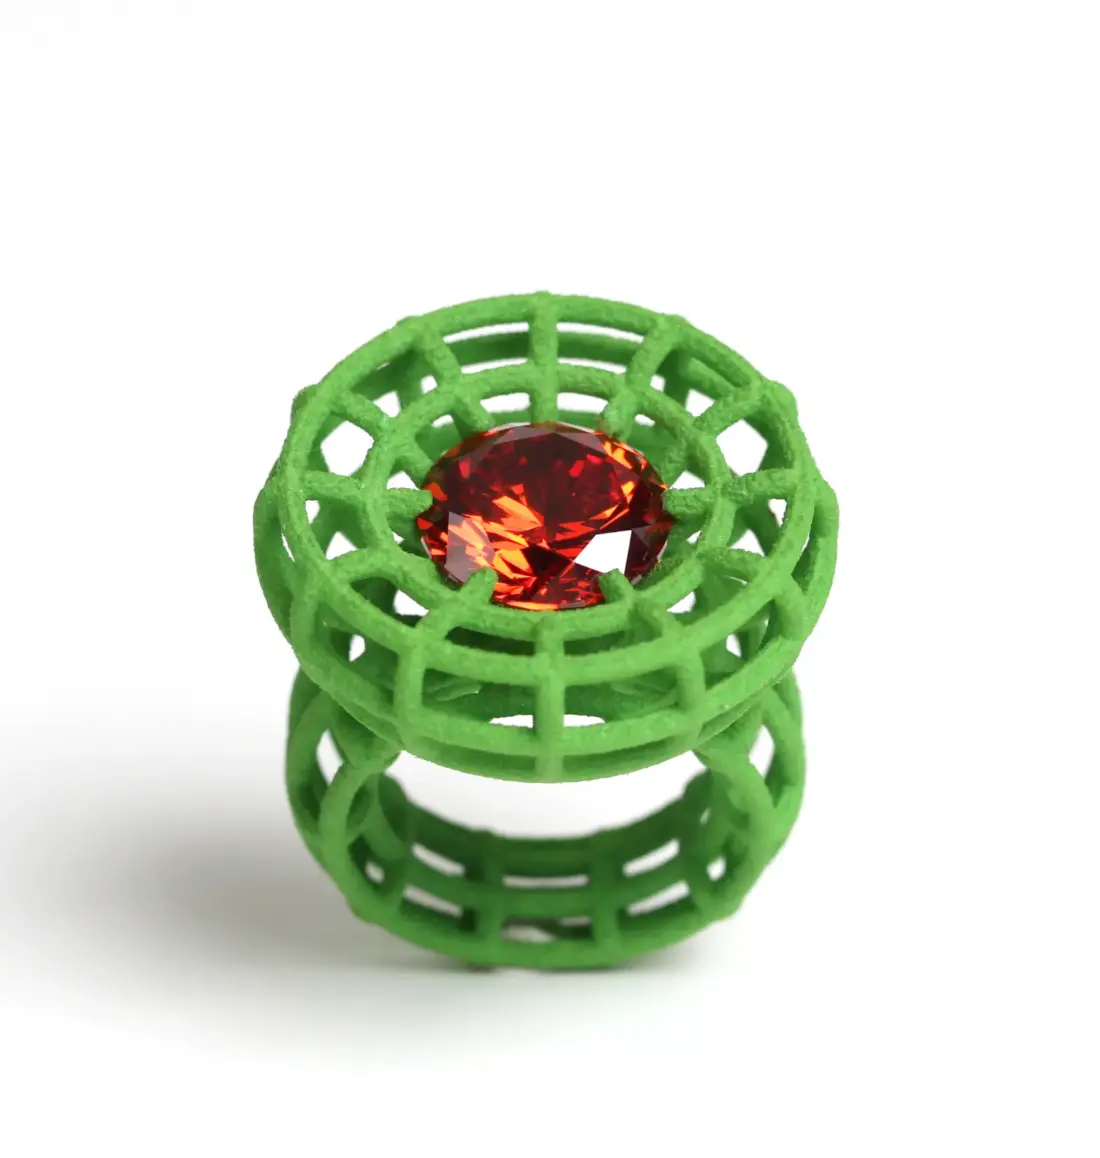 großer Cocktail Ring aus grünem Nylon mit orangenem Zirkonia im Zentrum. Der Ring ist als luftige Struktur aufgebaut.